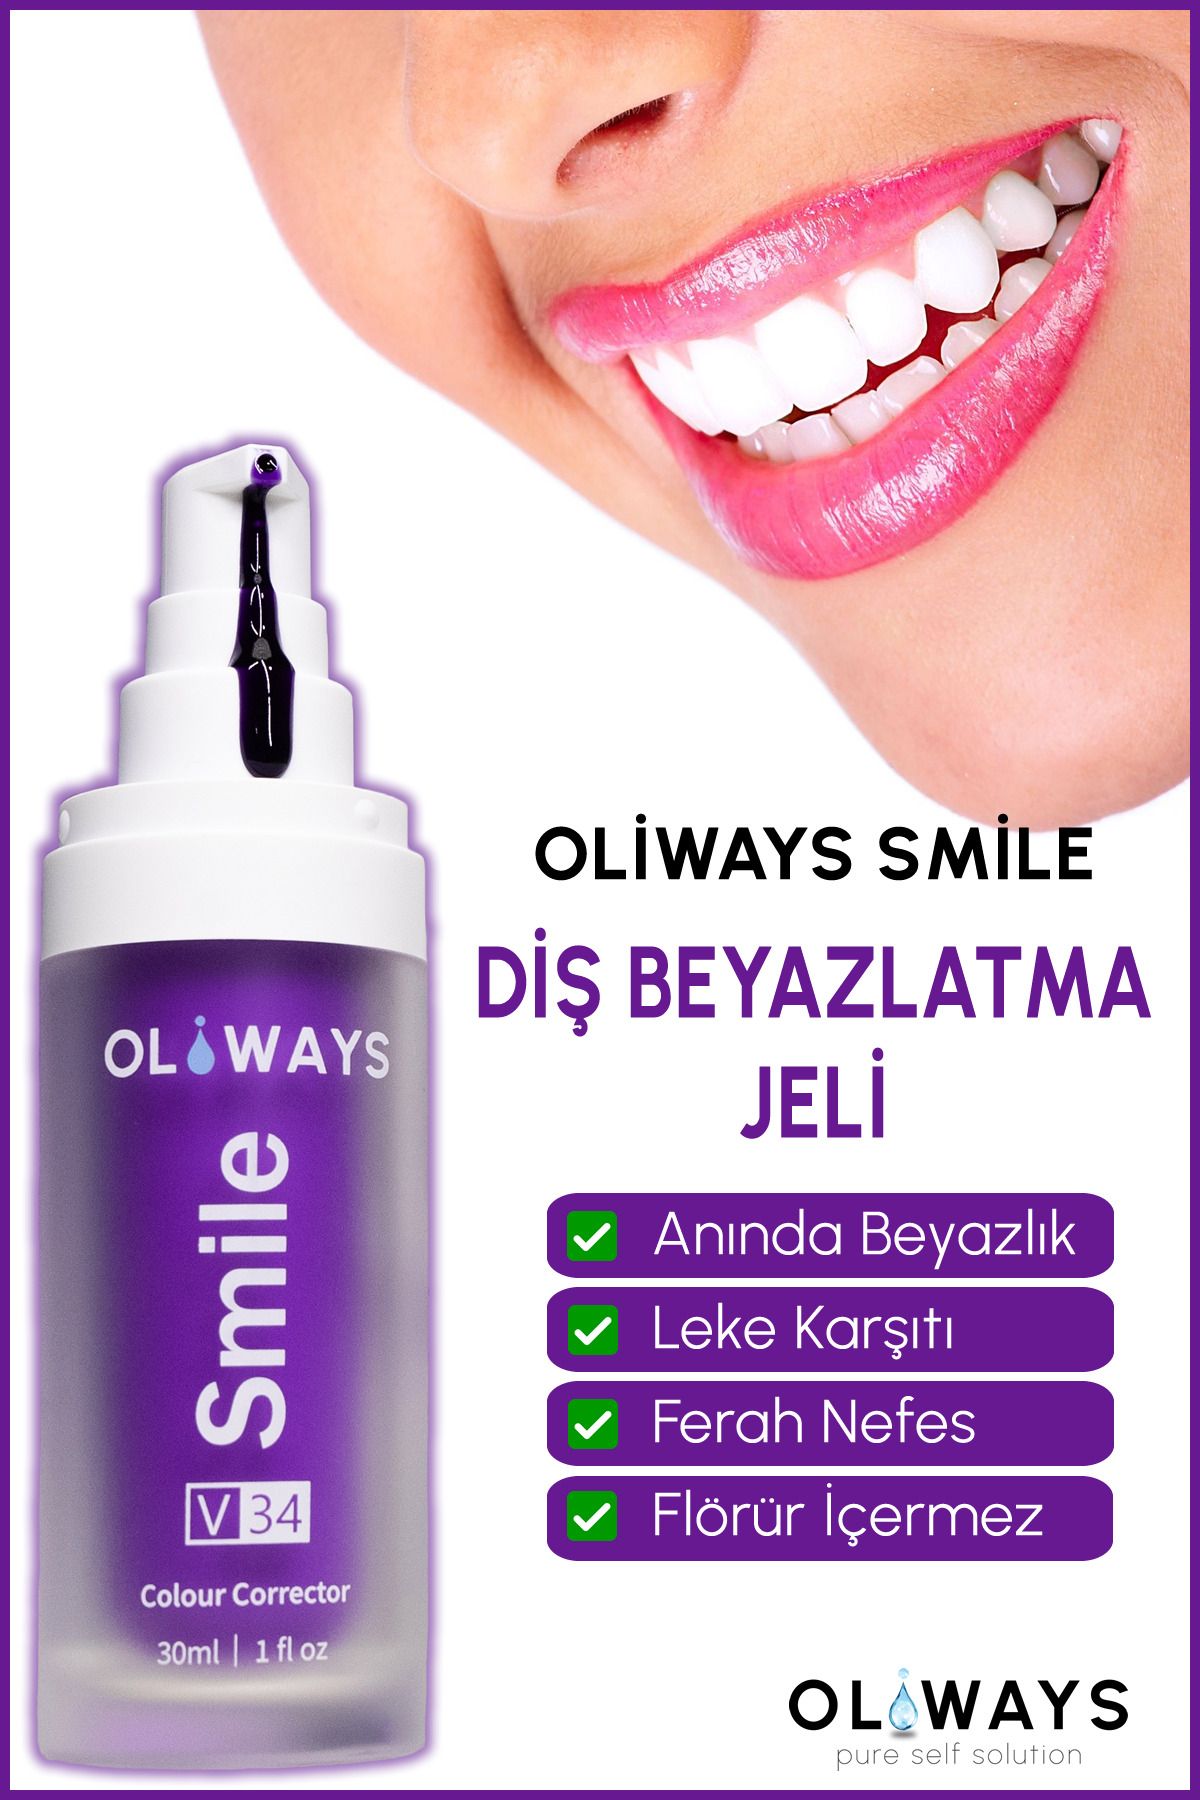 oliways Diş Beyazlatıcı Jel 30 ml Smile V34 Colour Corrector